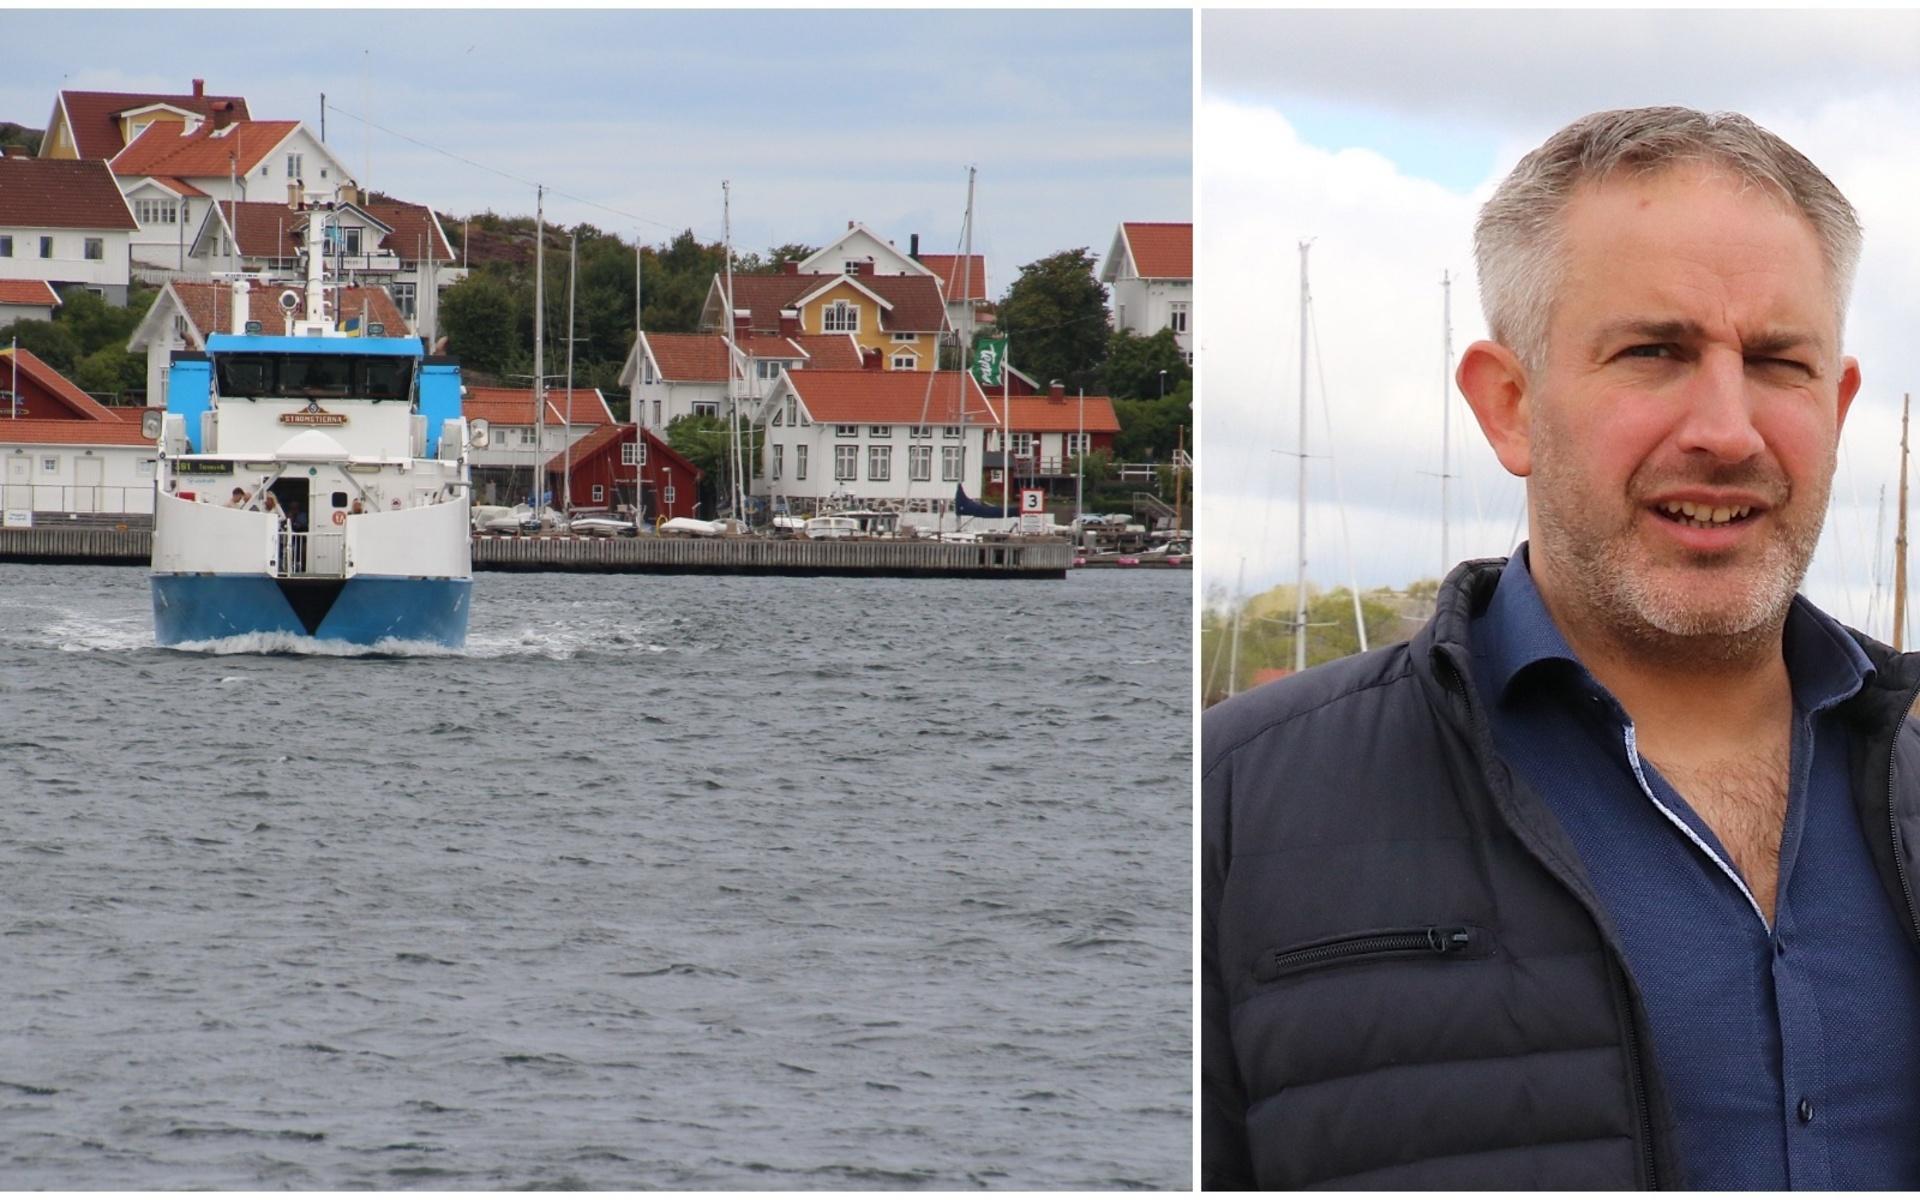 Andreas Sjögren tf chef affärsdrivande verksamhet arbetar med att få en lösning på återvinningsproblemet på Gullholmen, Käringön, Flatön och Malö. 